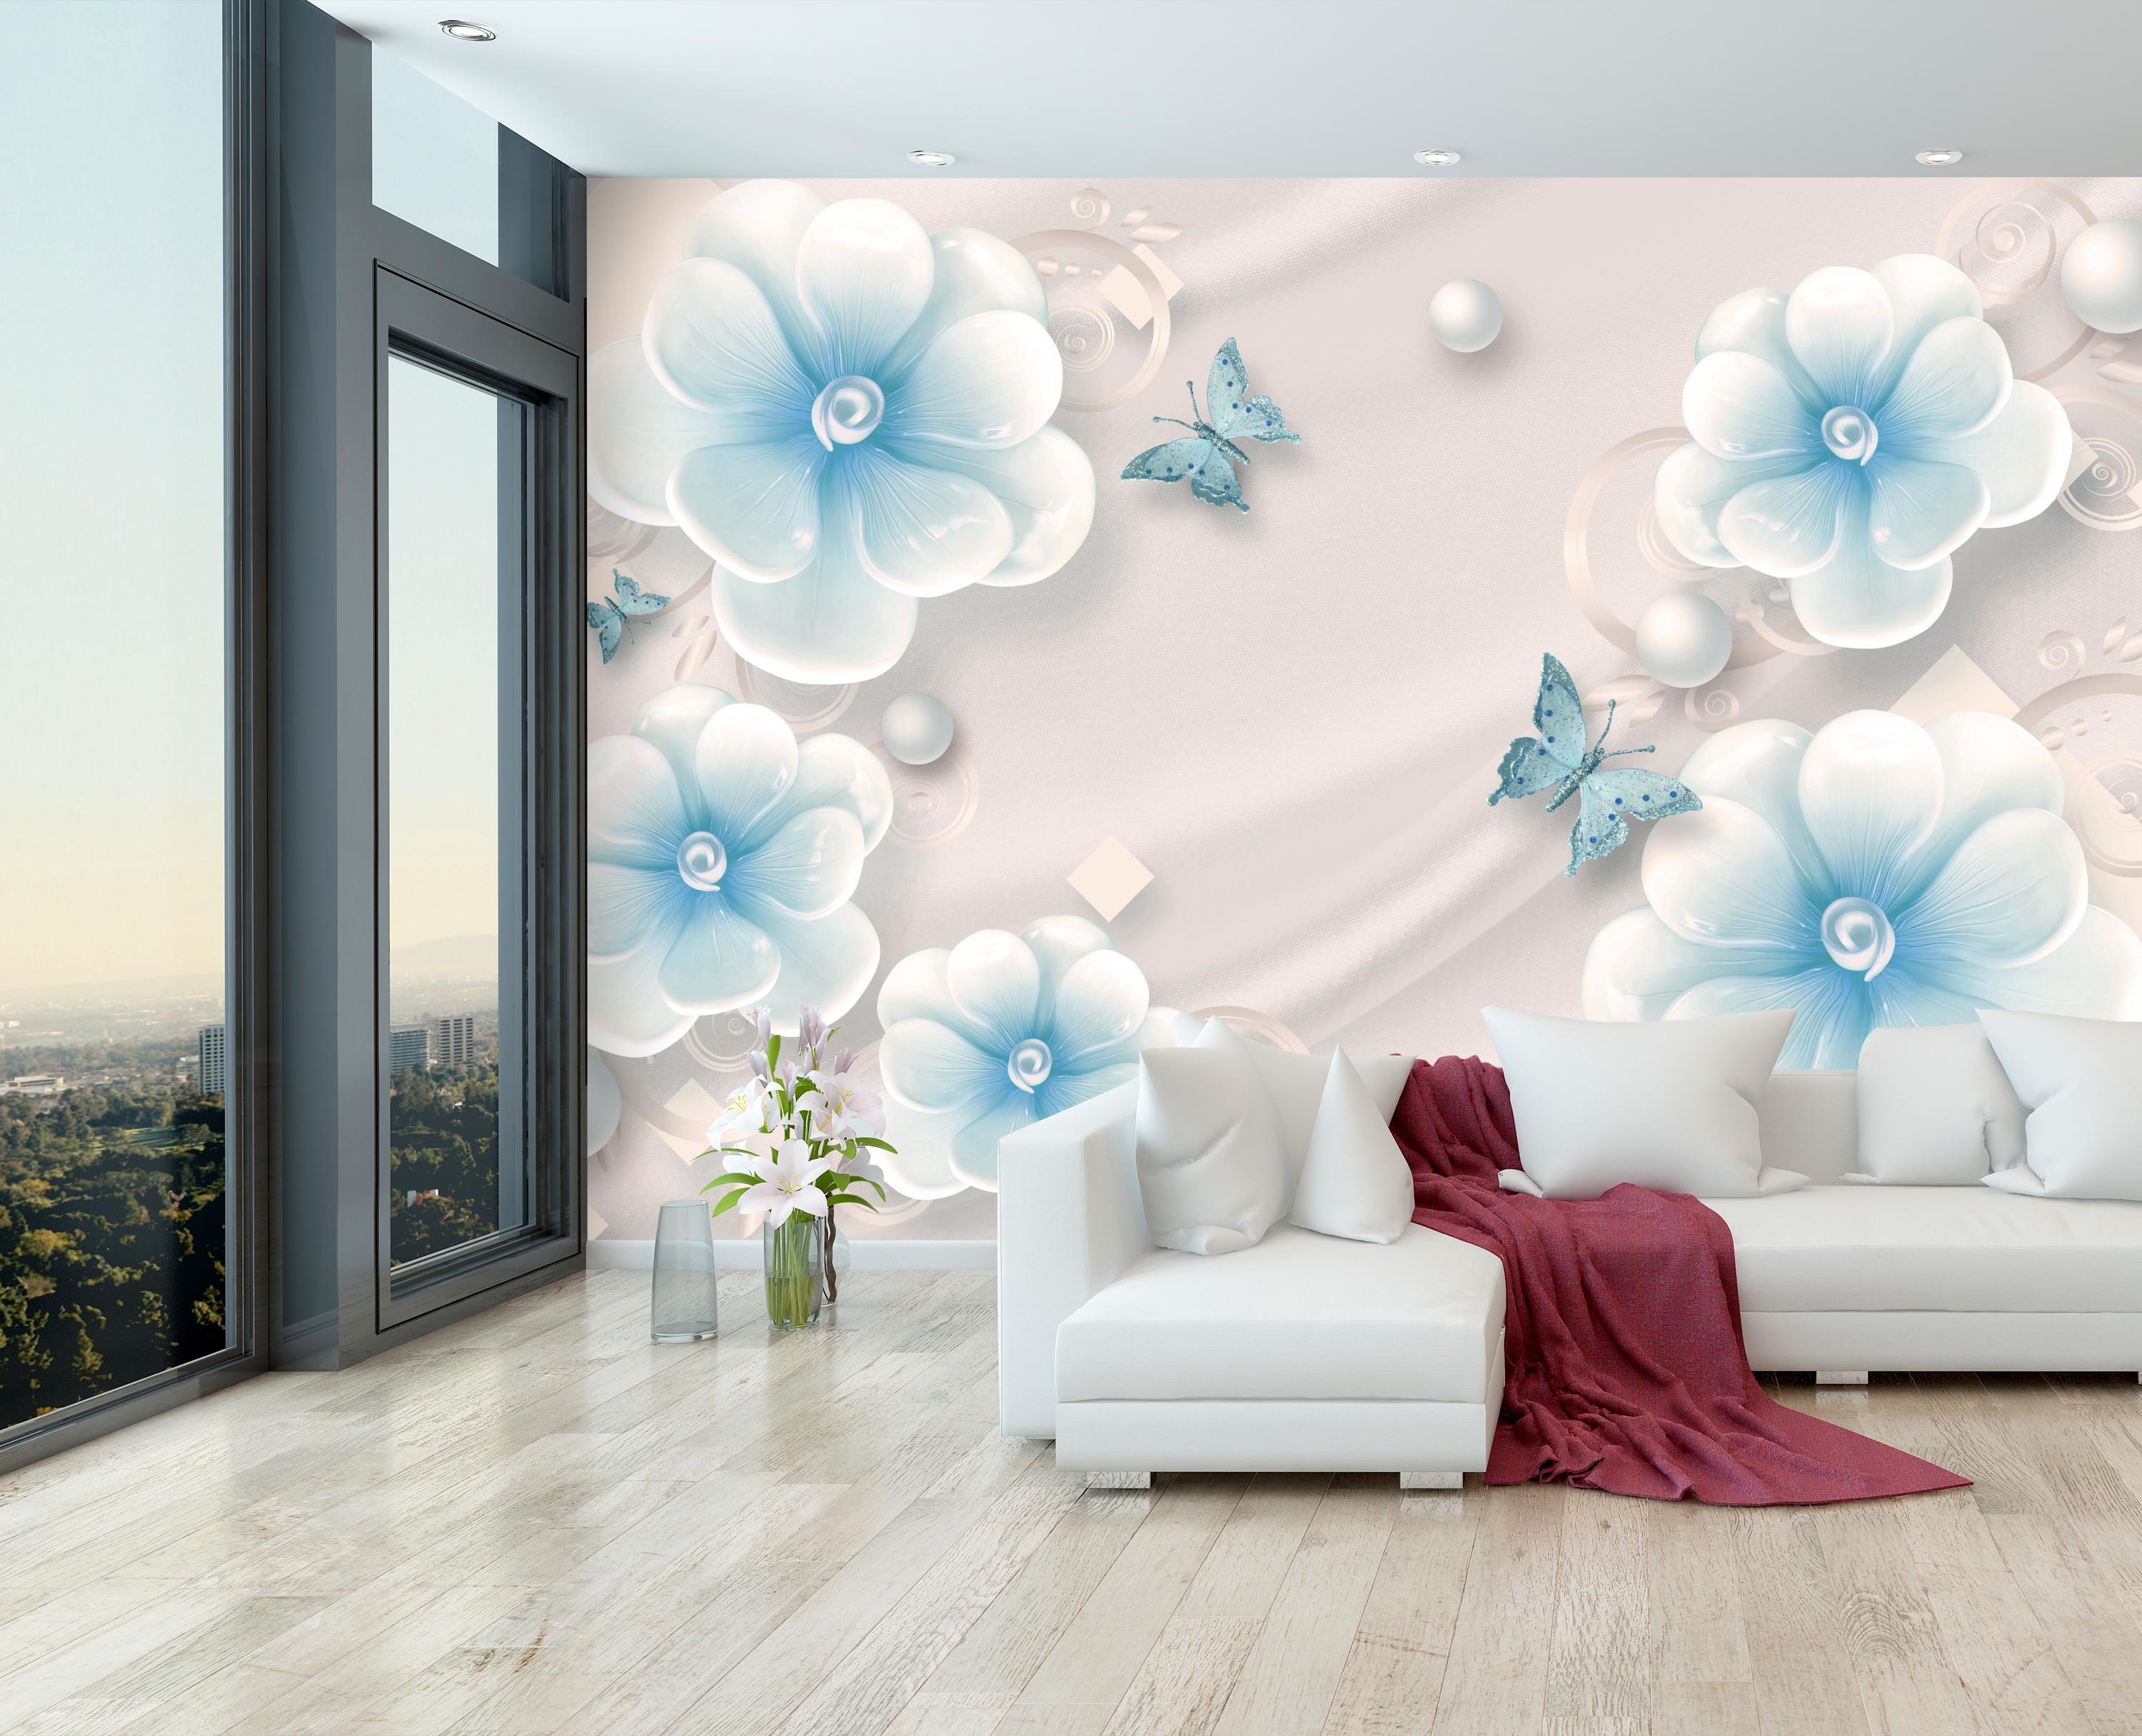 M5233 Flowers Discover Mural Wall Silk Butterflies Beads Blue